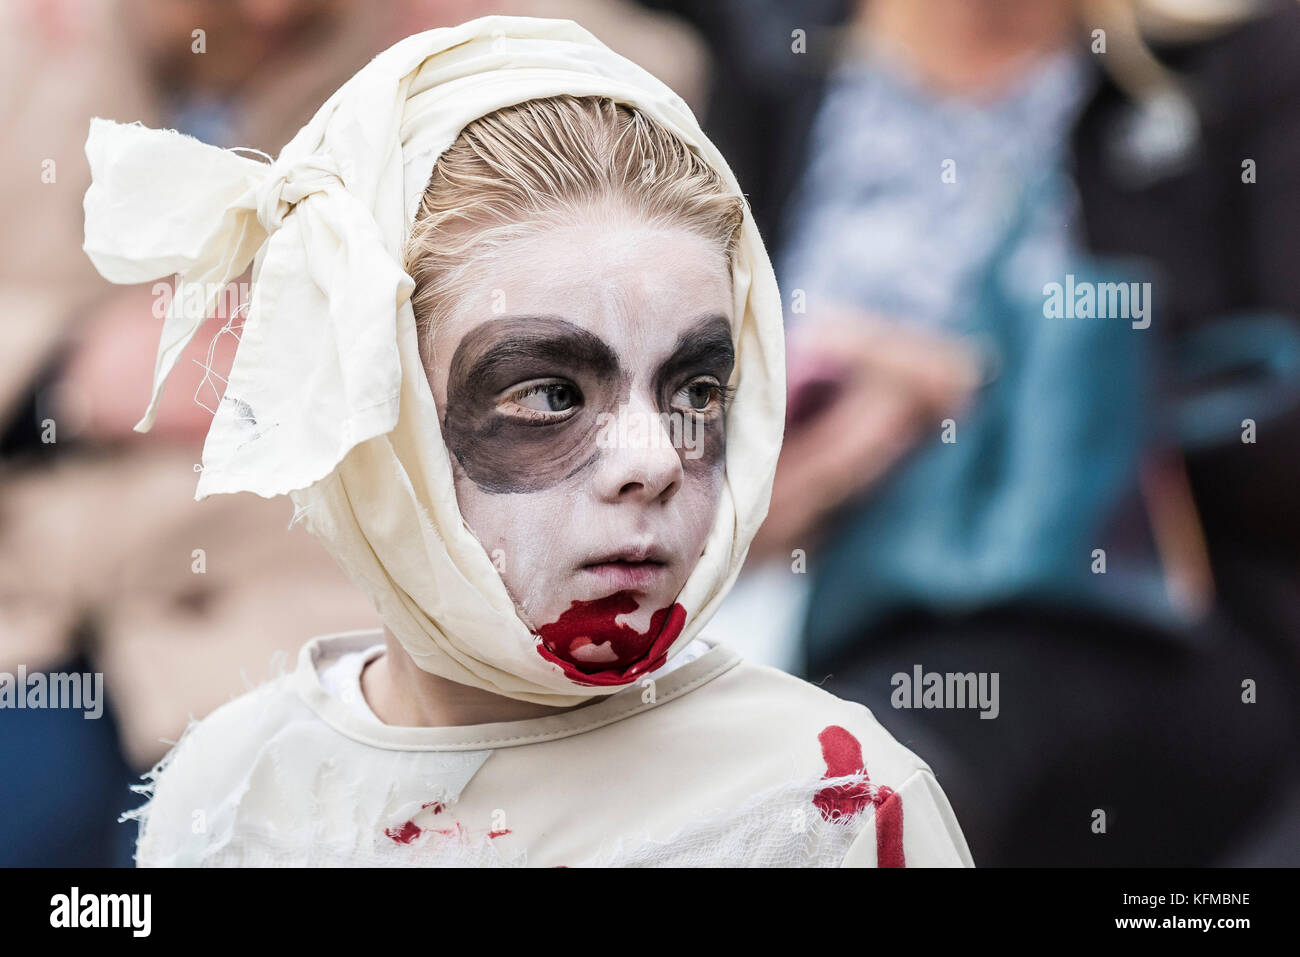 Zombies - un niño joven vestido como zombie en el Zombie Crawl anual en Newquay, Cornwall. Foto de stock